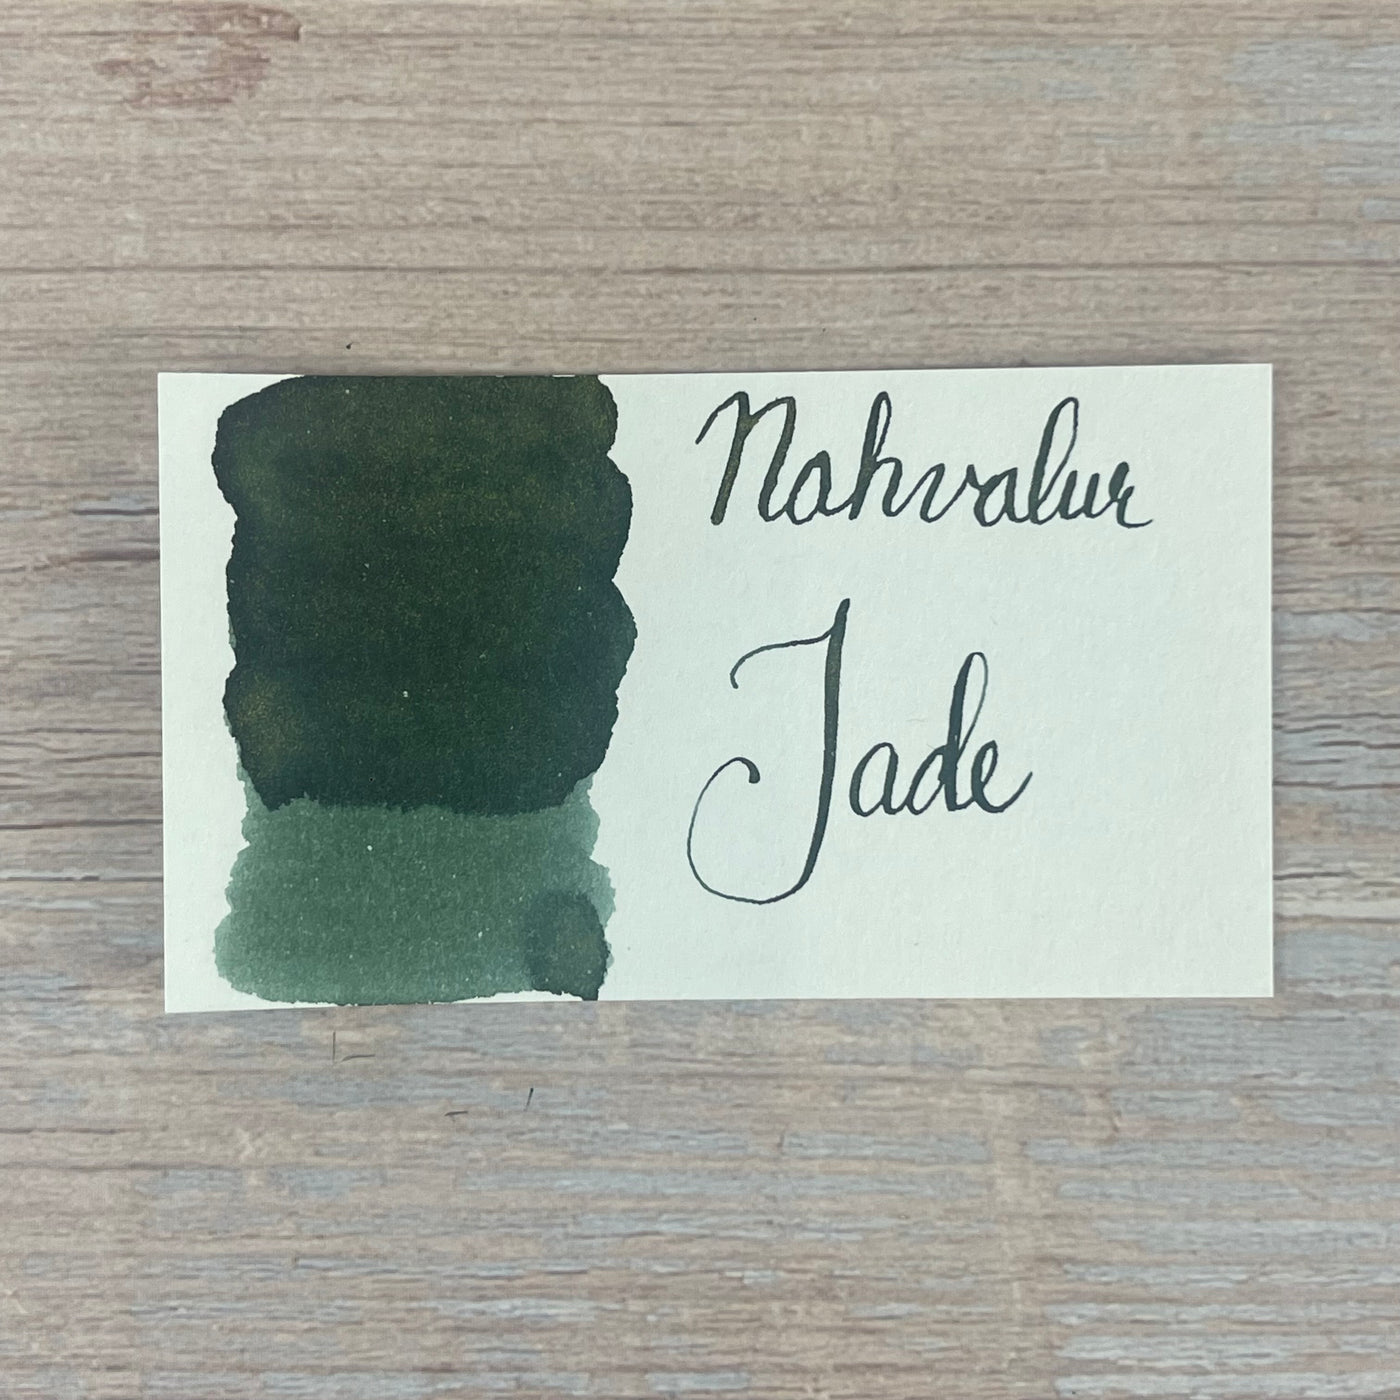 Nahvalur (Narwhal) Jade - 20ml Bottled Ink